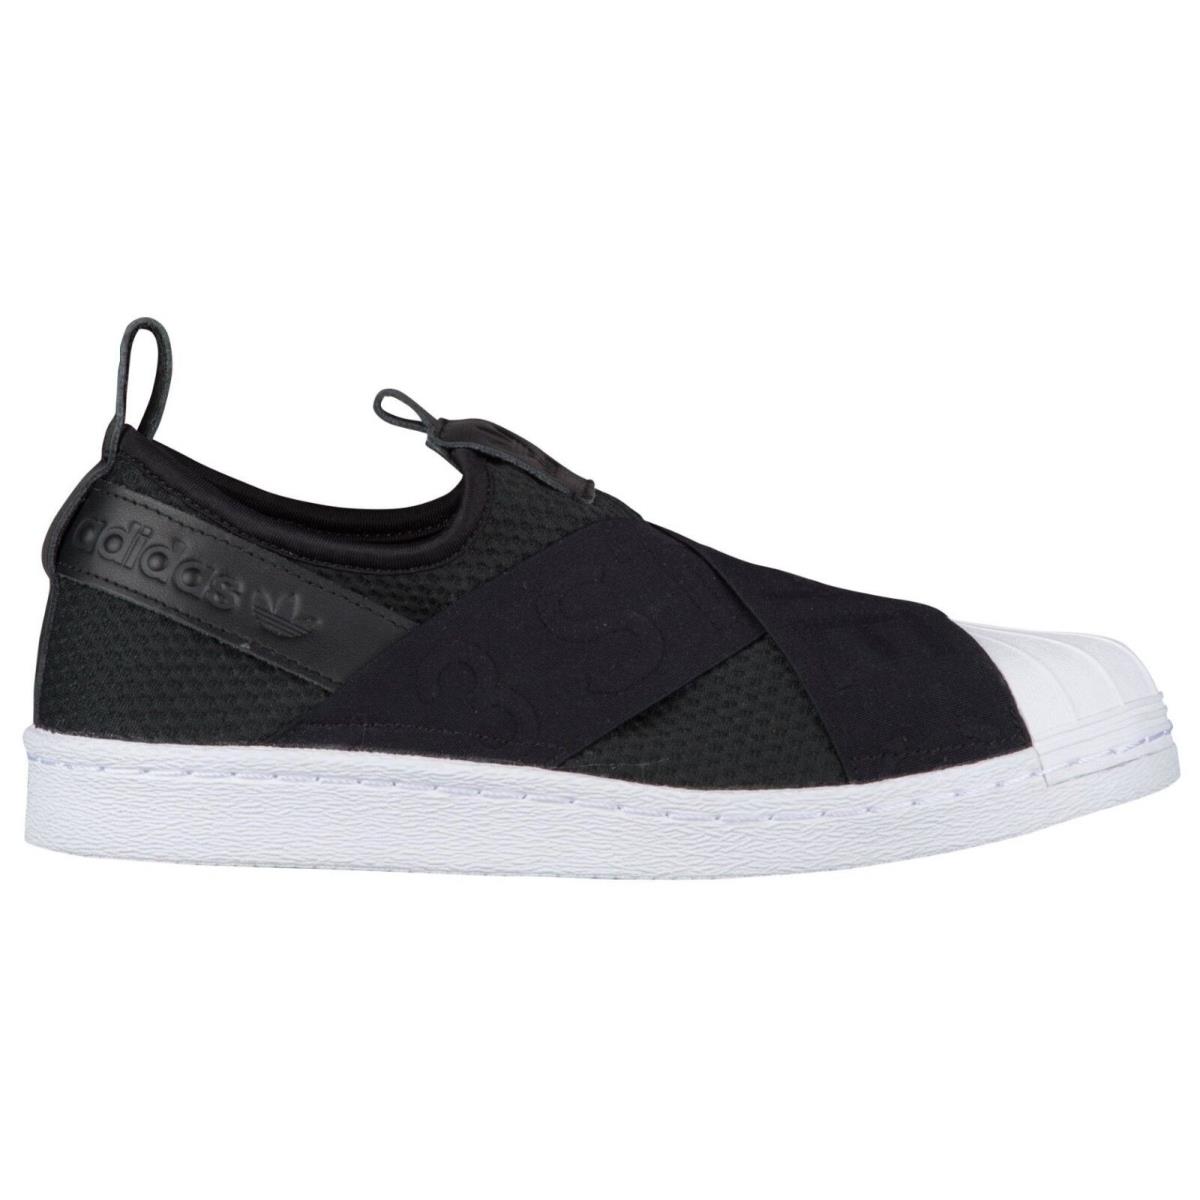 Adidas Superstar Slip On Womens CQ2382 Black White Neoprene Shell Shoes Sz 10.5 - Black/White